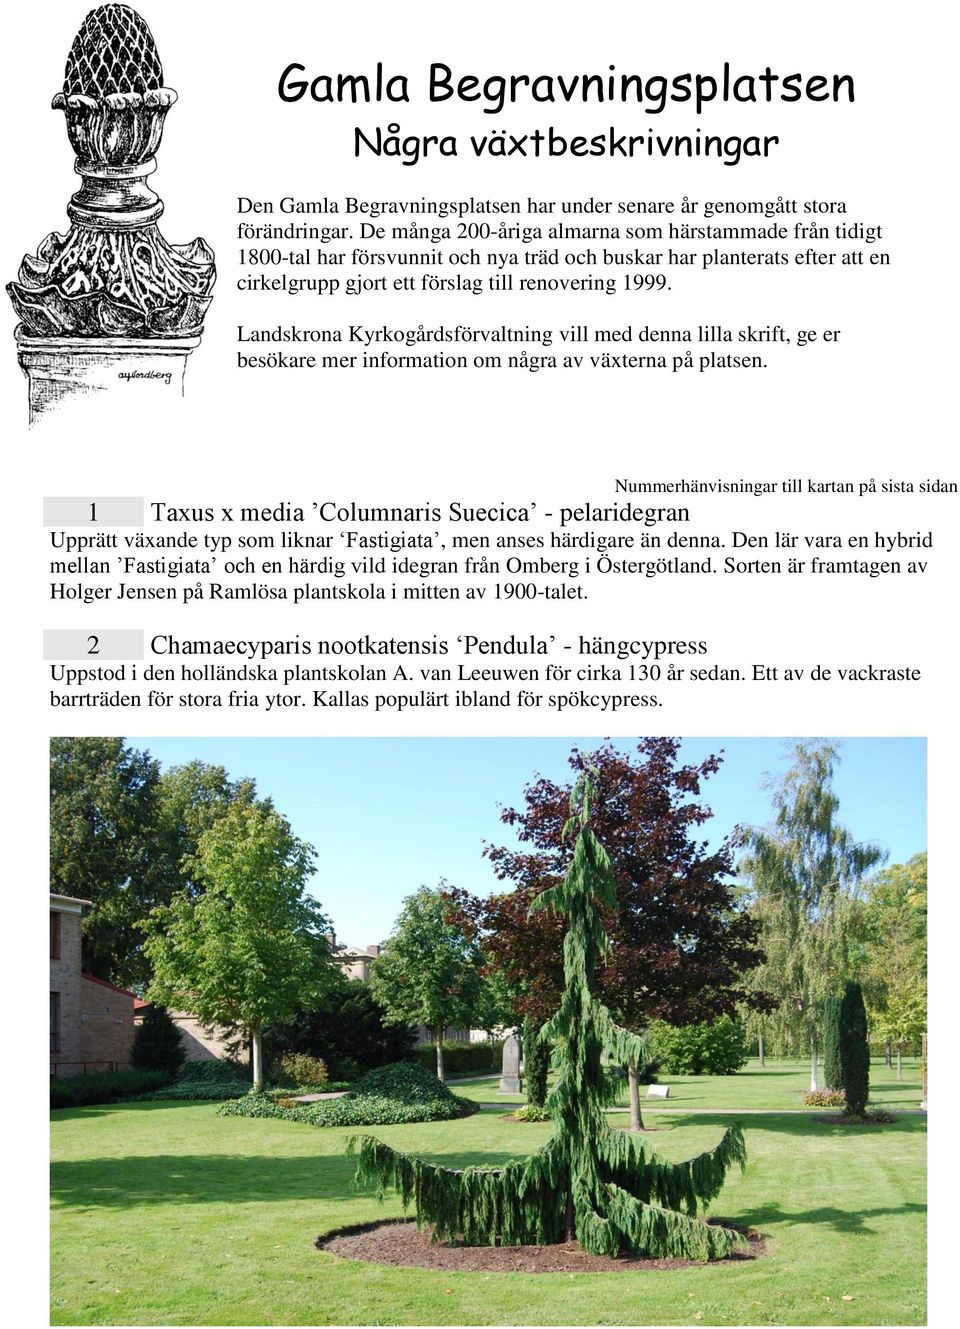 Landskrona Kyrkogårdsförvaltning vill med denna lilla skrift, ge er besökare mer information om några av växterna på platsen.